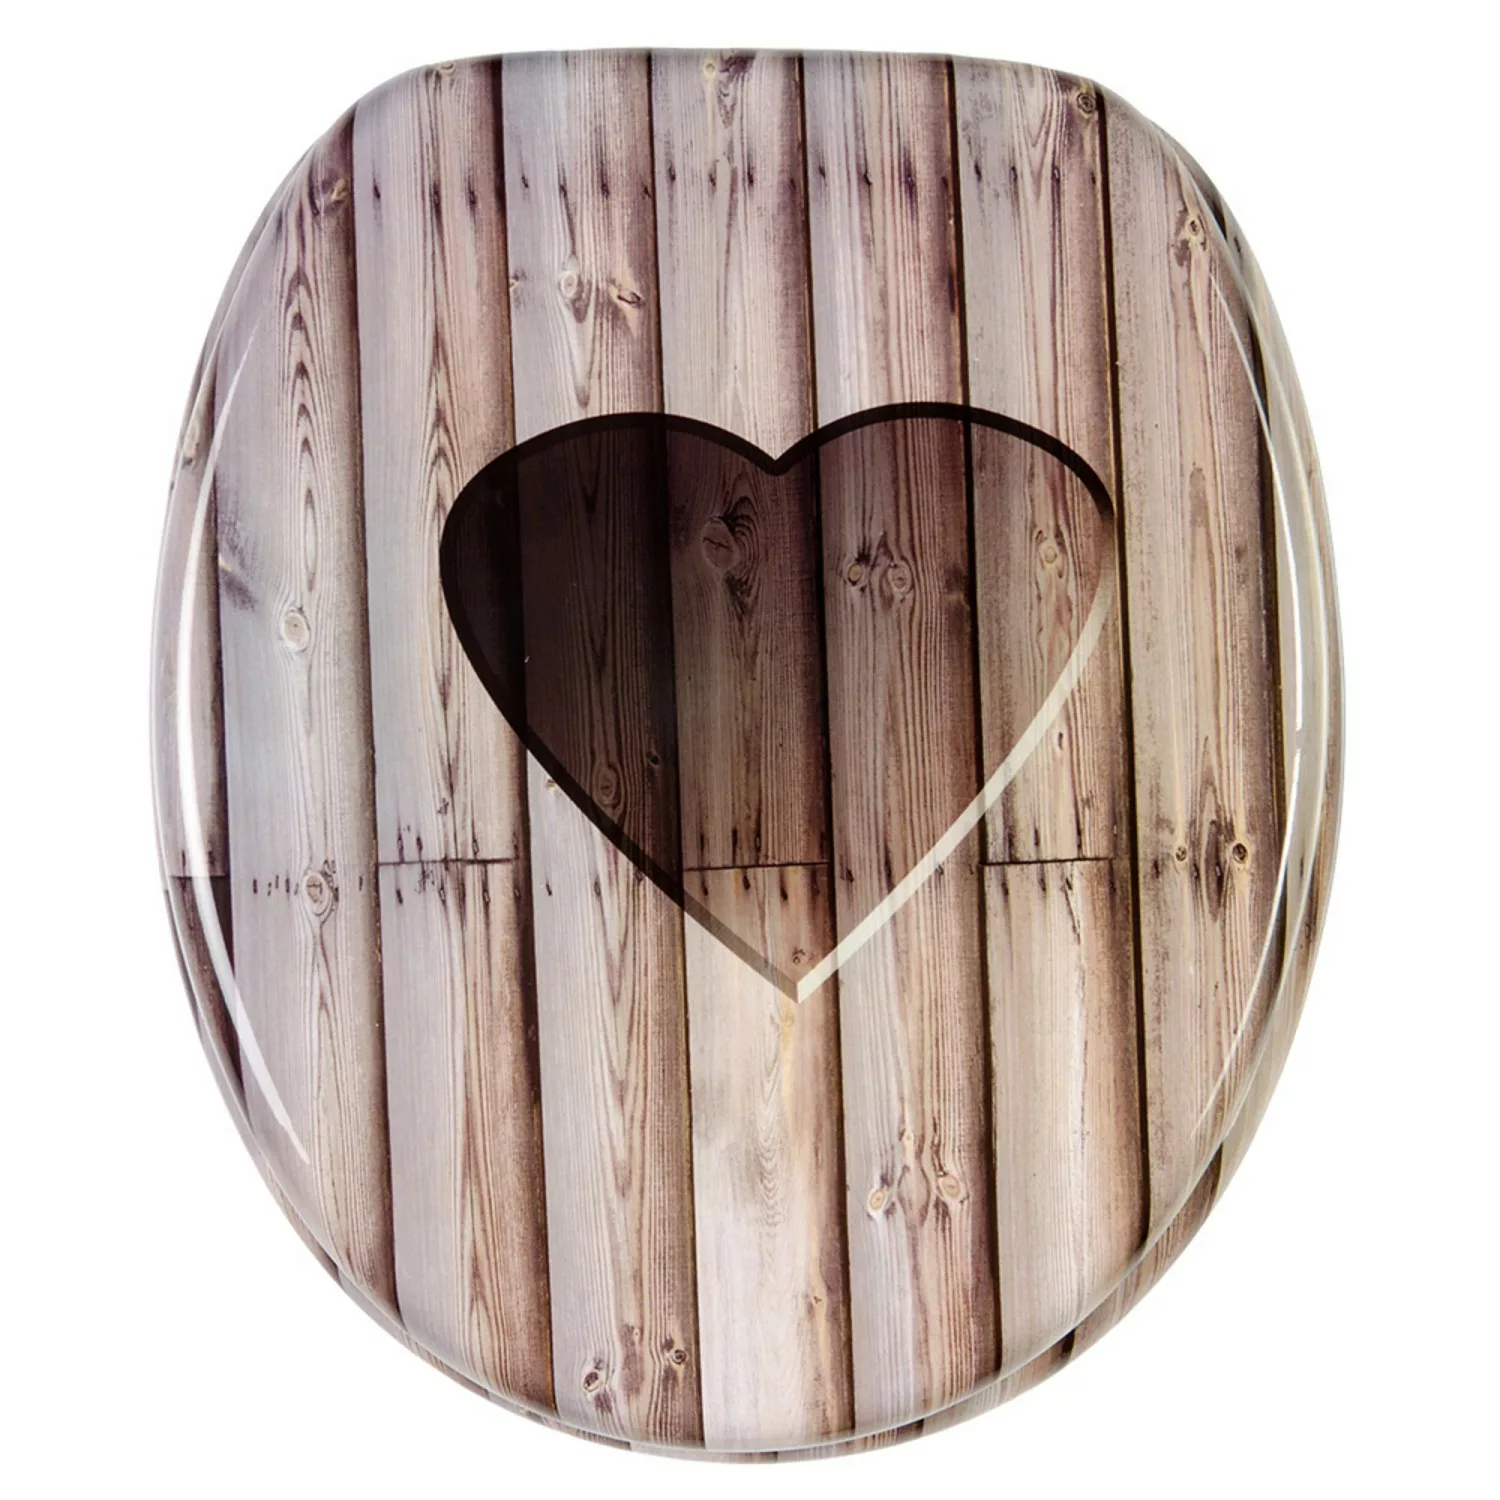 Sanilo WC Sitz mit Absenkautomatik Wooden Heart, hochwertiger und stabiler günstig online kaufen